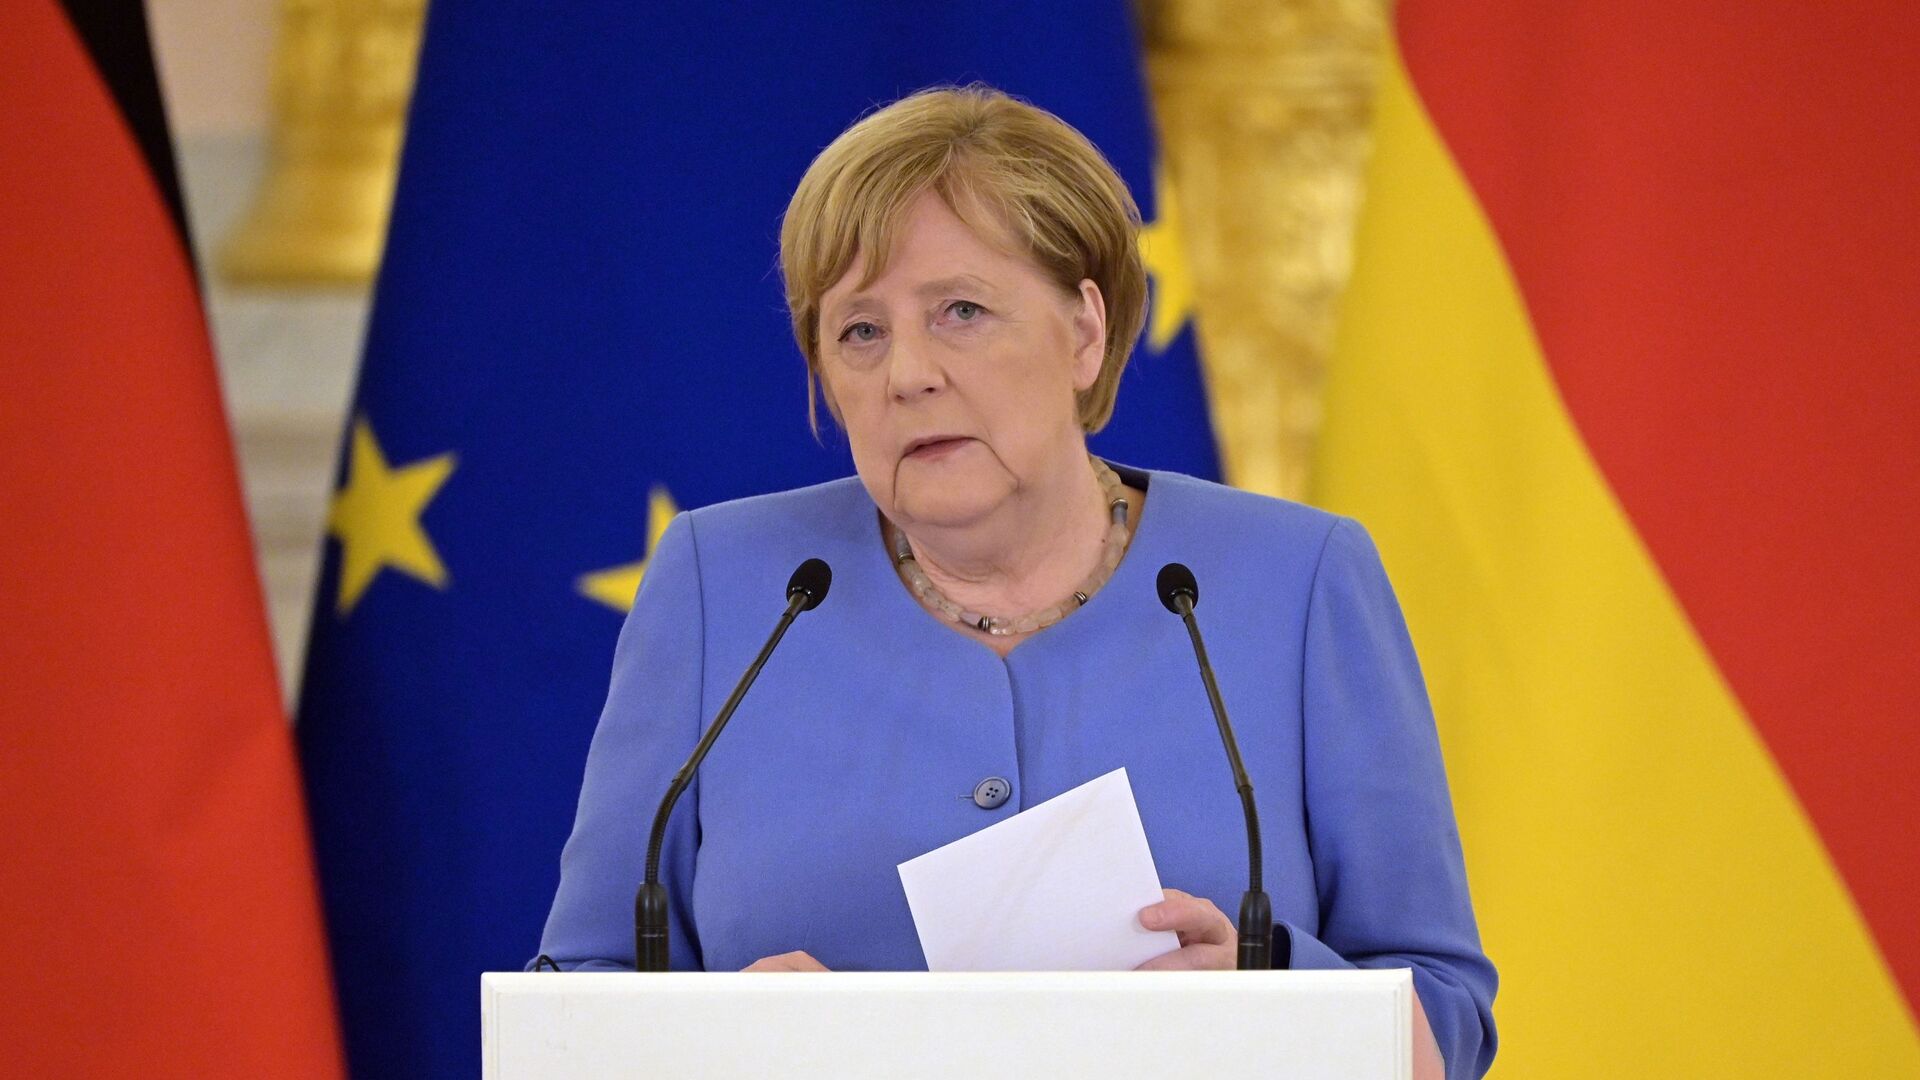 Bà Merkel Nói Hòa Bình Vững Chắc ở Châu Âu Chỉ Có được Với Sự Tham Gia